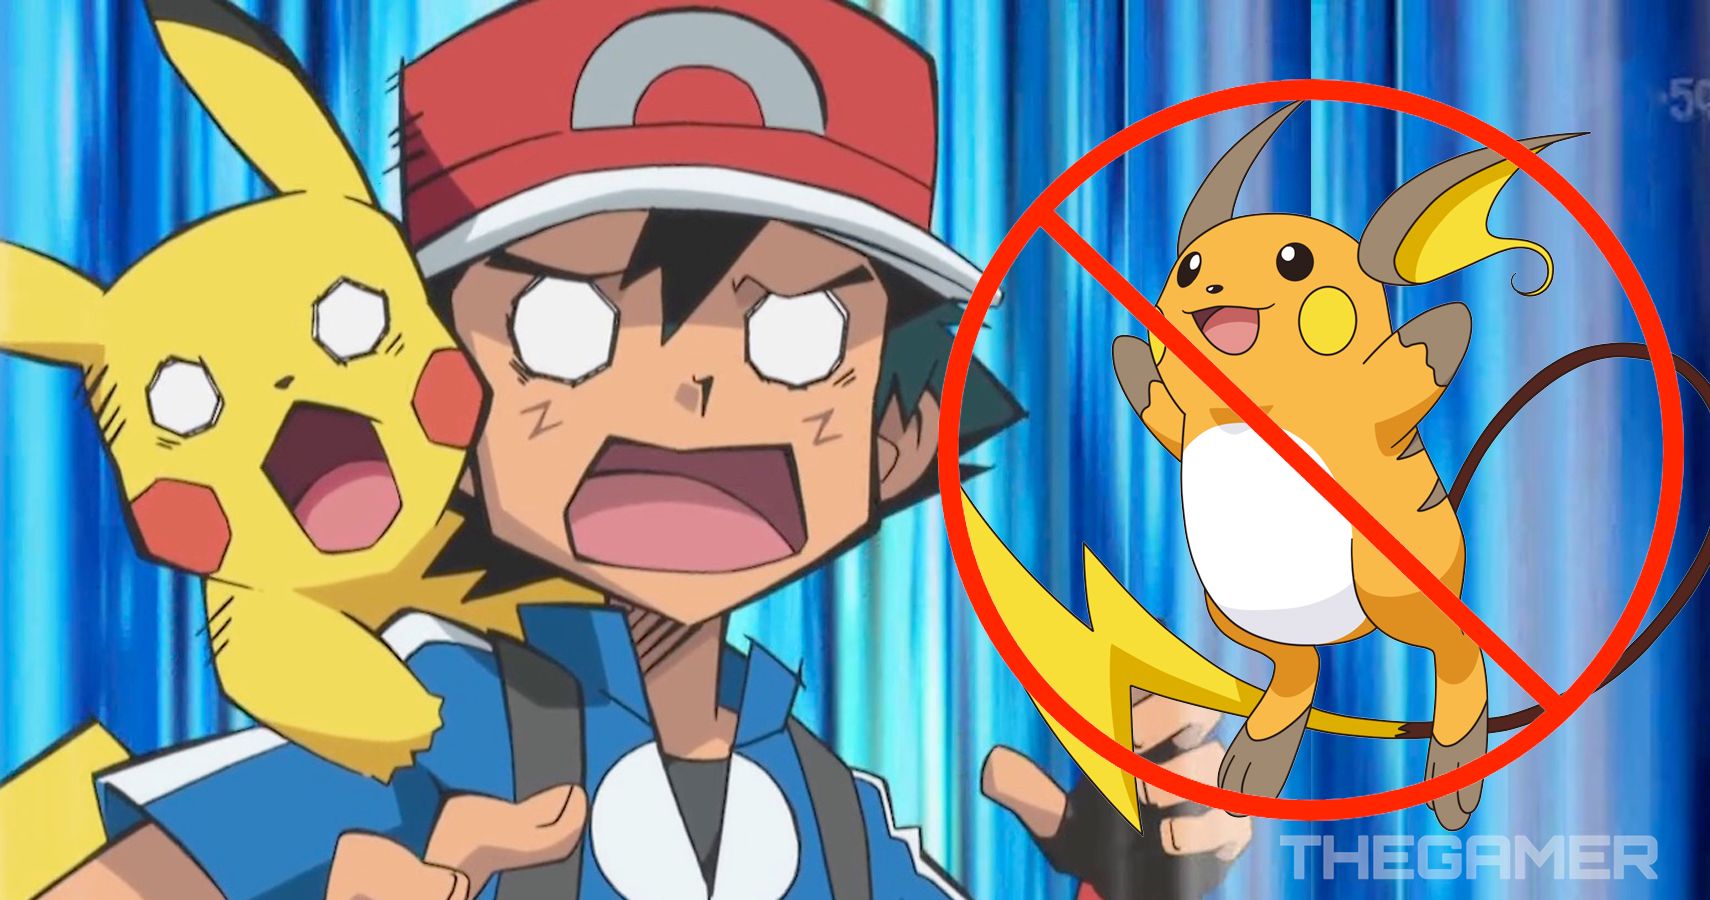 Surprise, Surprise - Ash's Pikachu Did Not Evolve Into A Raichu